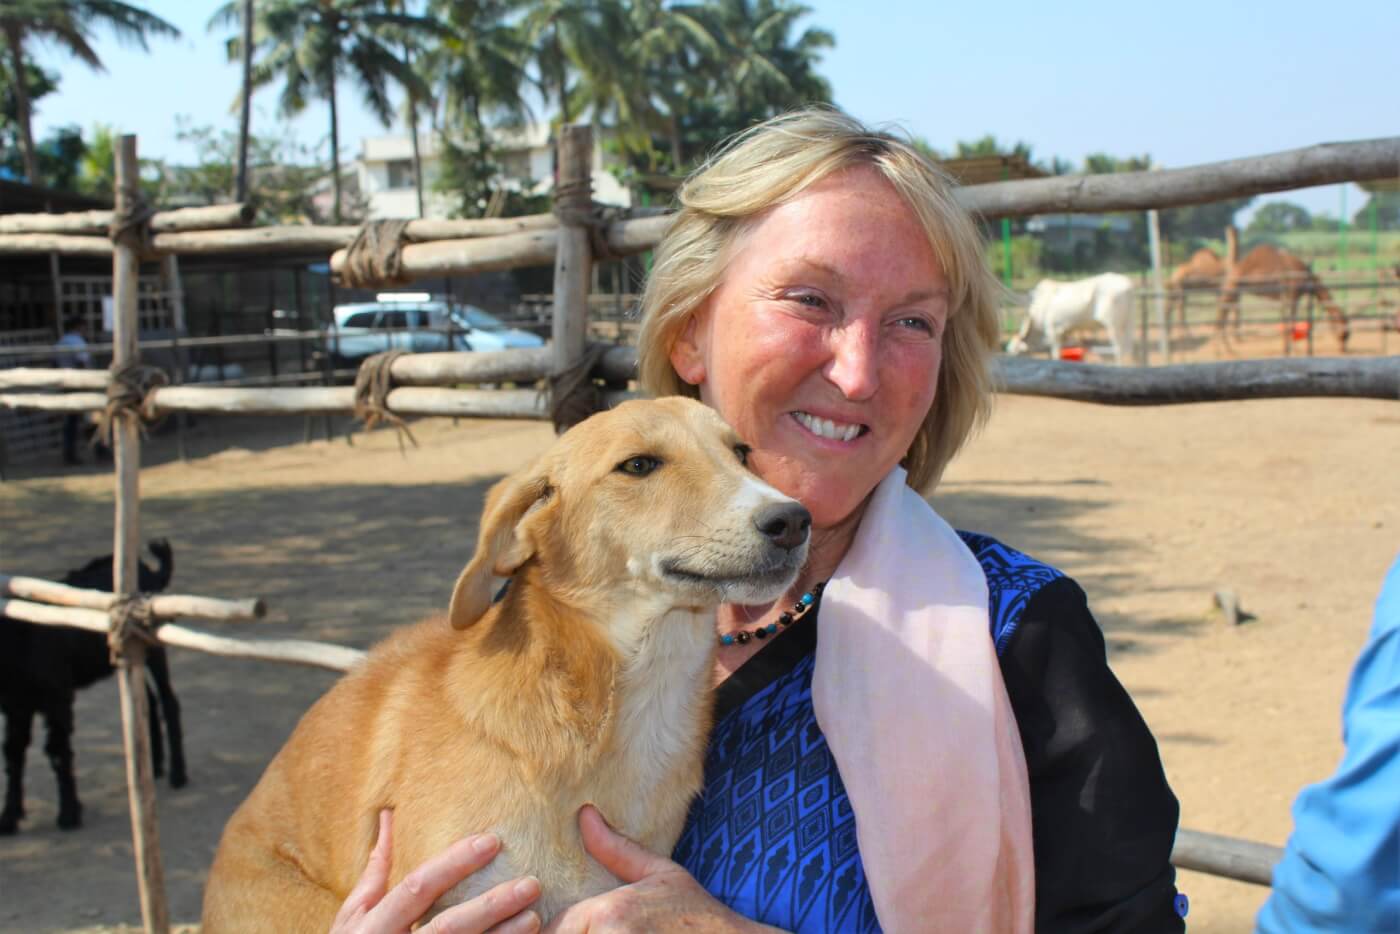 Ingrid and dog at Animal Rahat in 2015